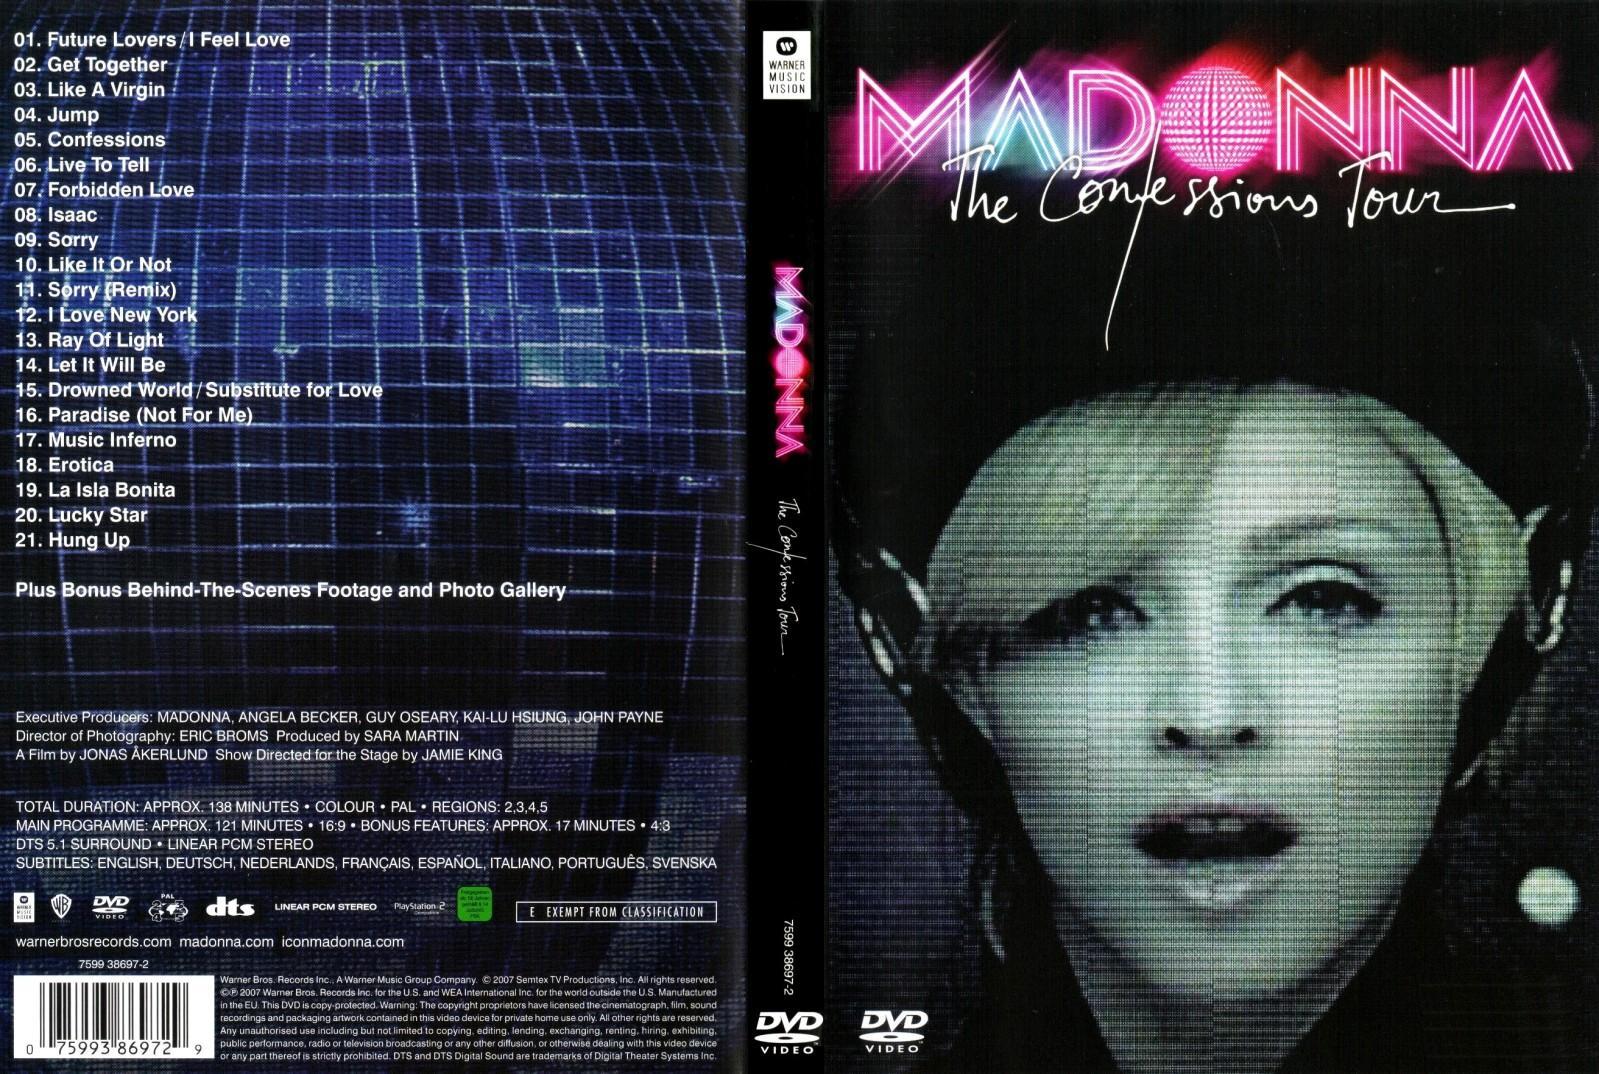 Conciertos desde el sofa de casa - Página 14 Madonna_The_Confessions_Tour_Live_from_London_TV-791012491-large